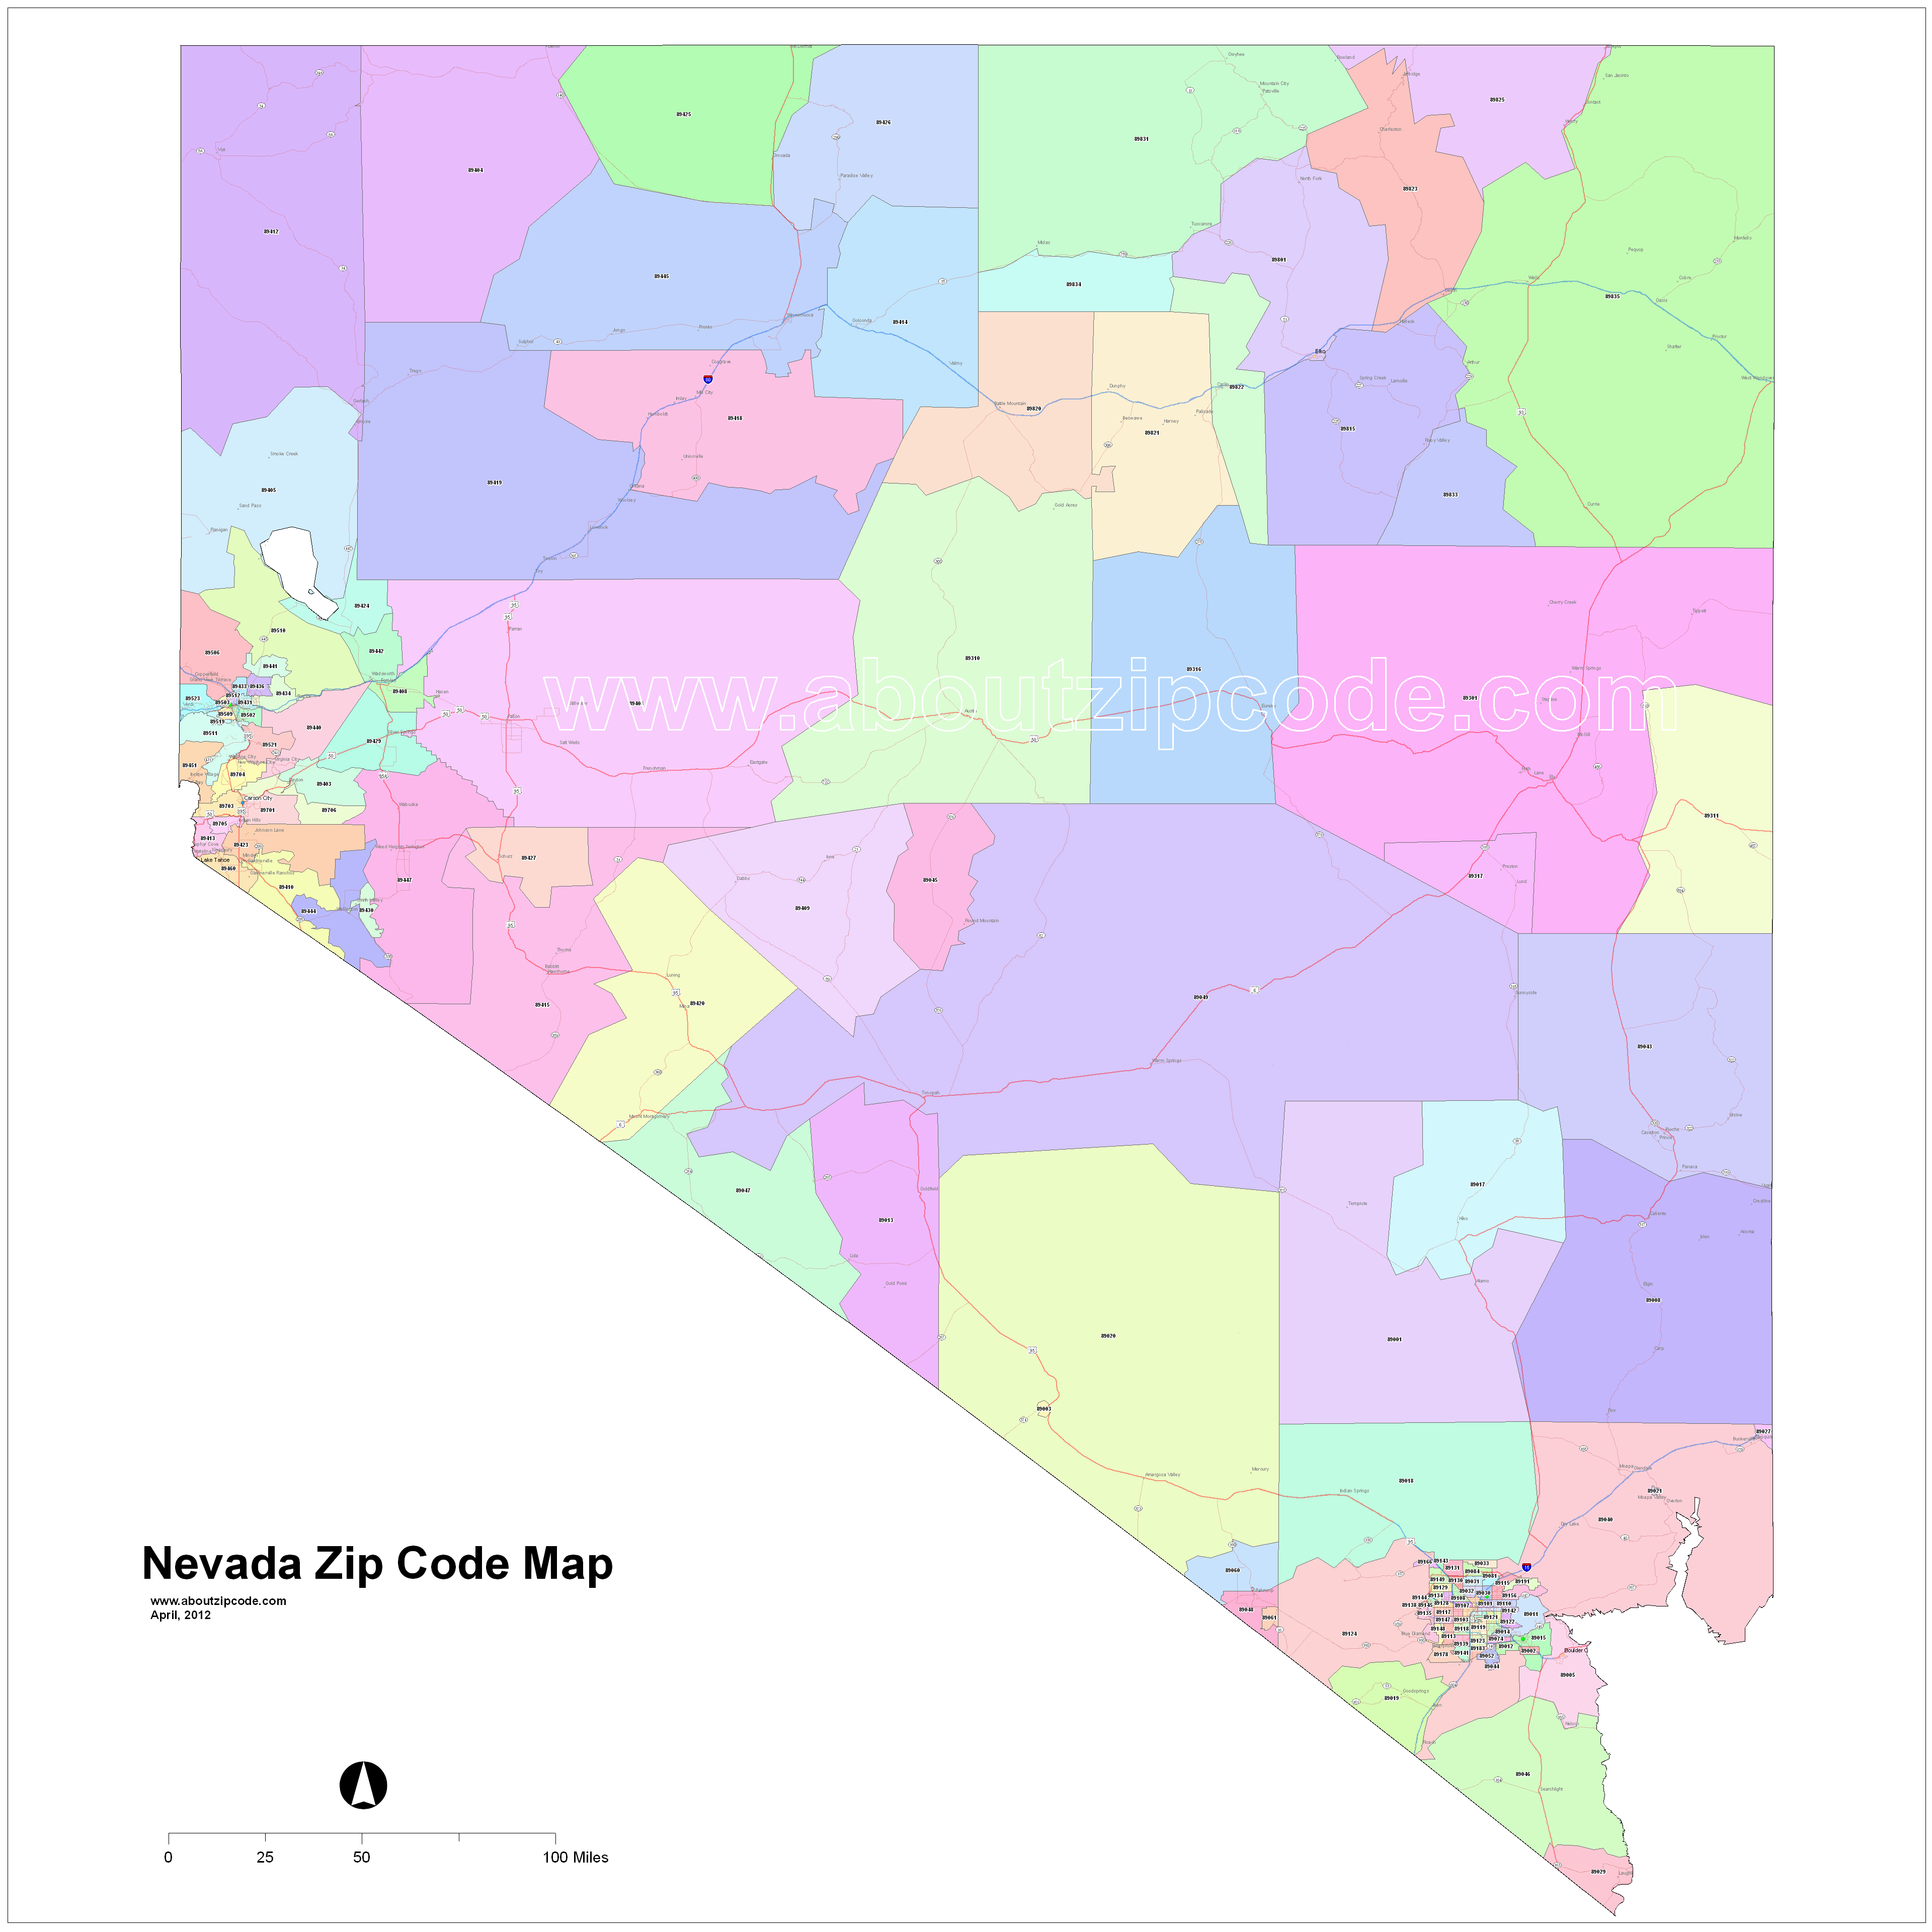 Nevada Zip Code Maps Free Nevada Zip Code Maps 4117